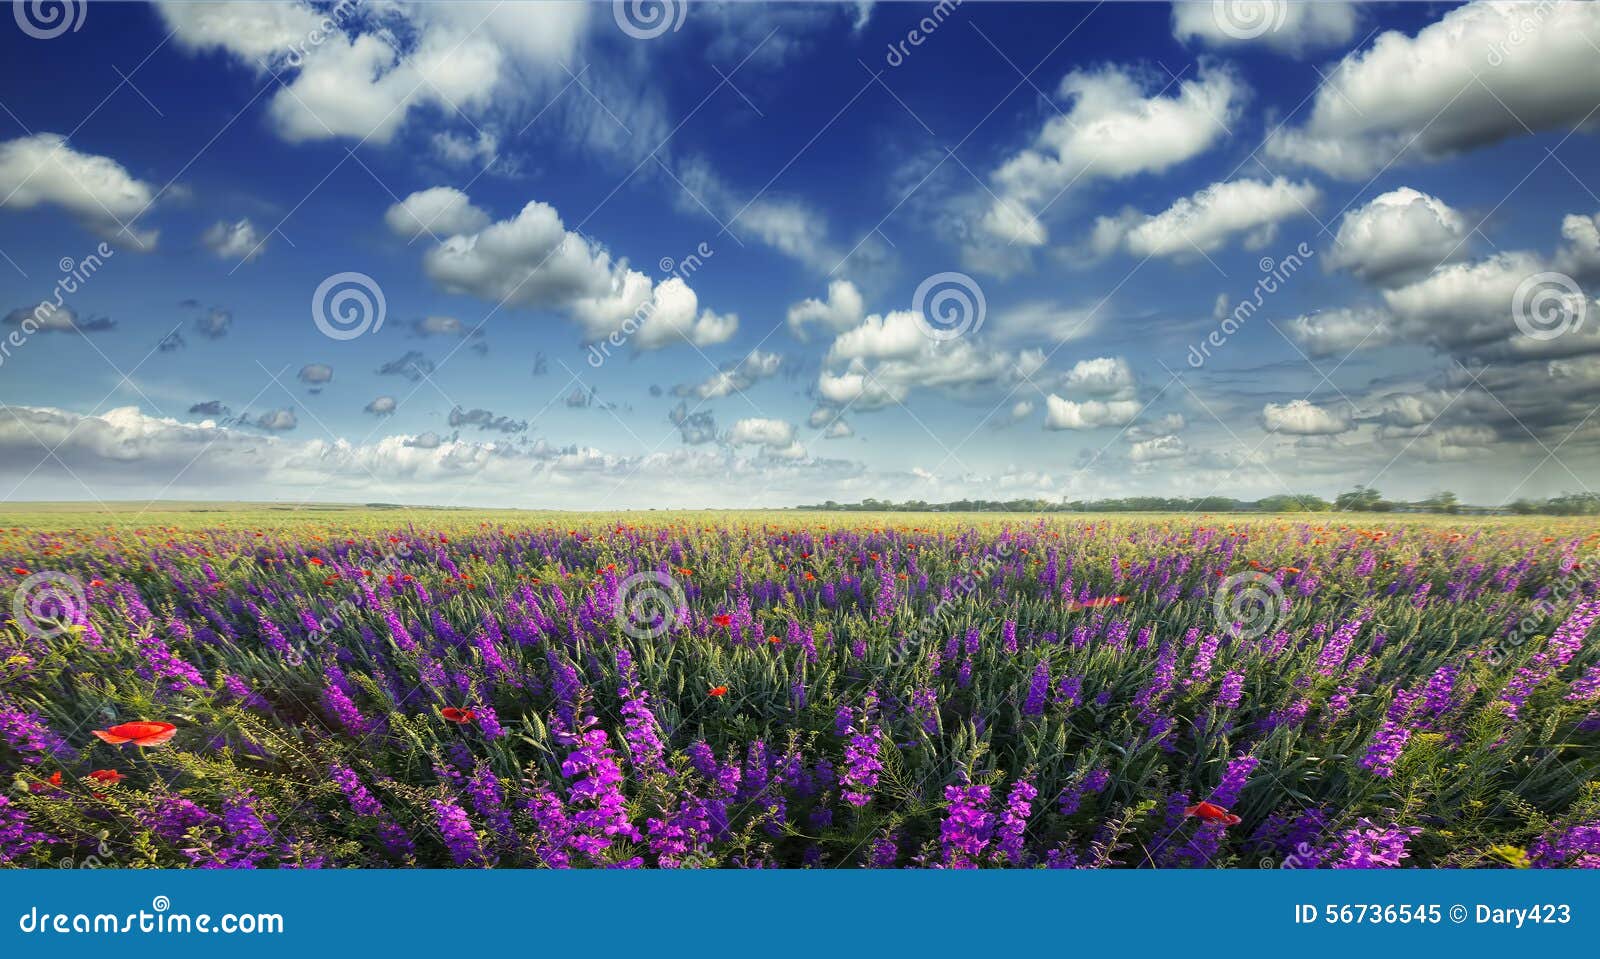 花的领域的美丽的景色库存图片 图片包括有蓝色 红色 云彩 云角 草甸 问题的 鸦片 场面